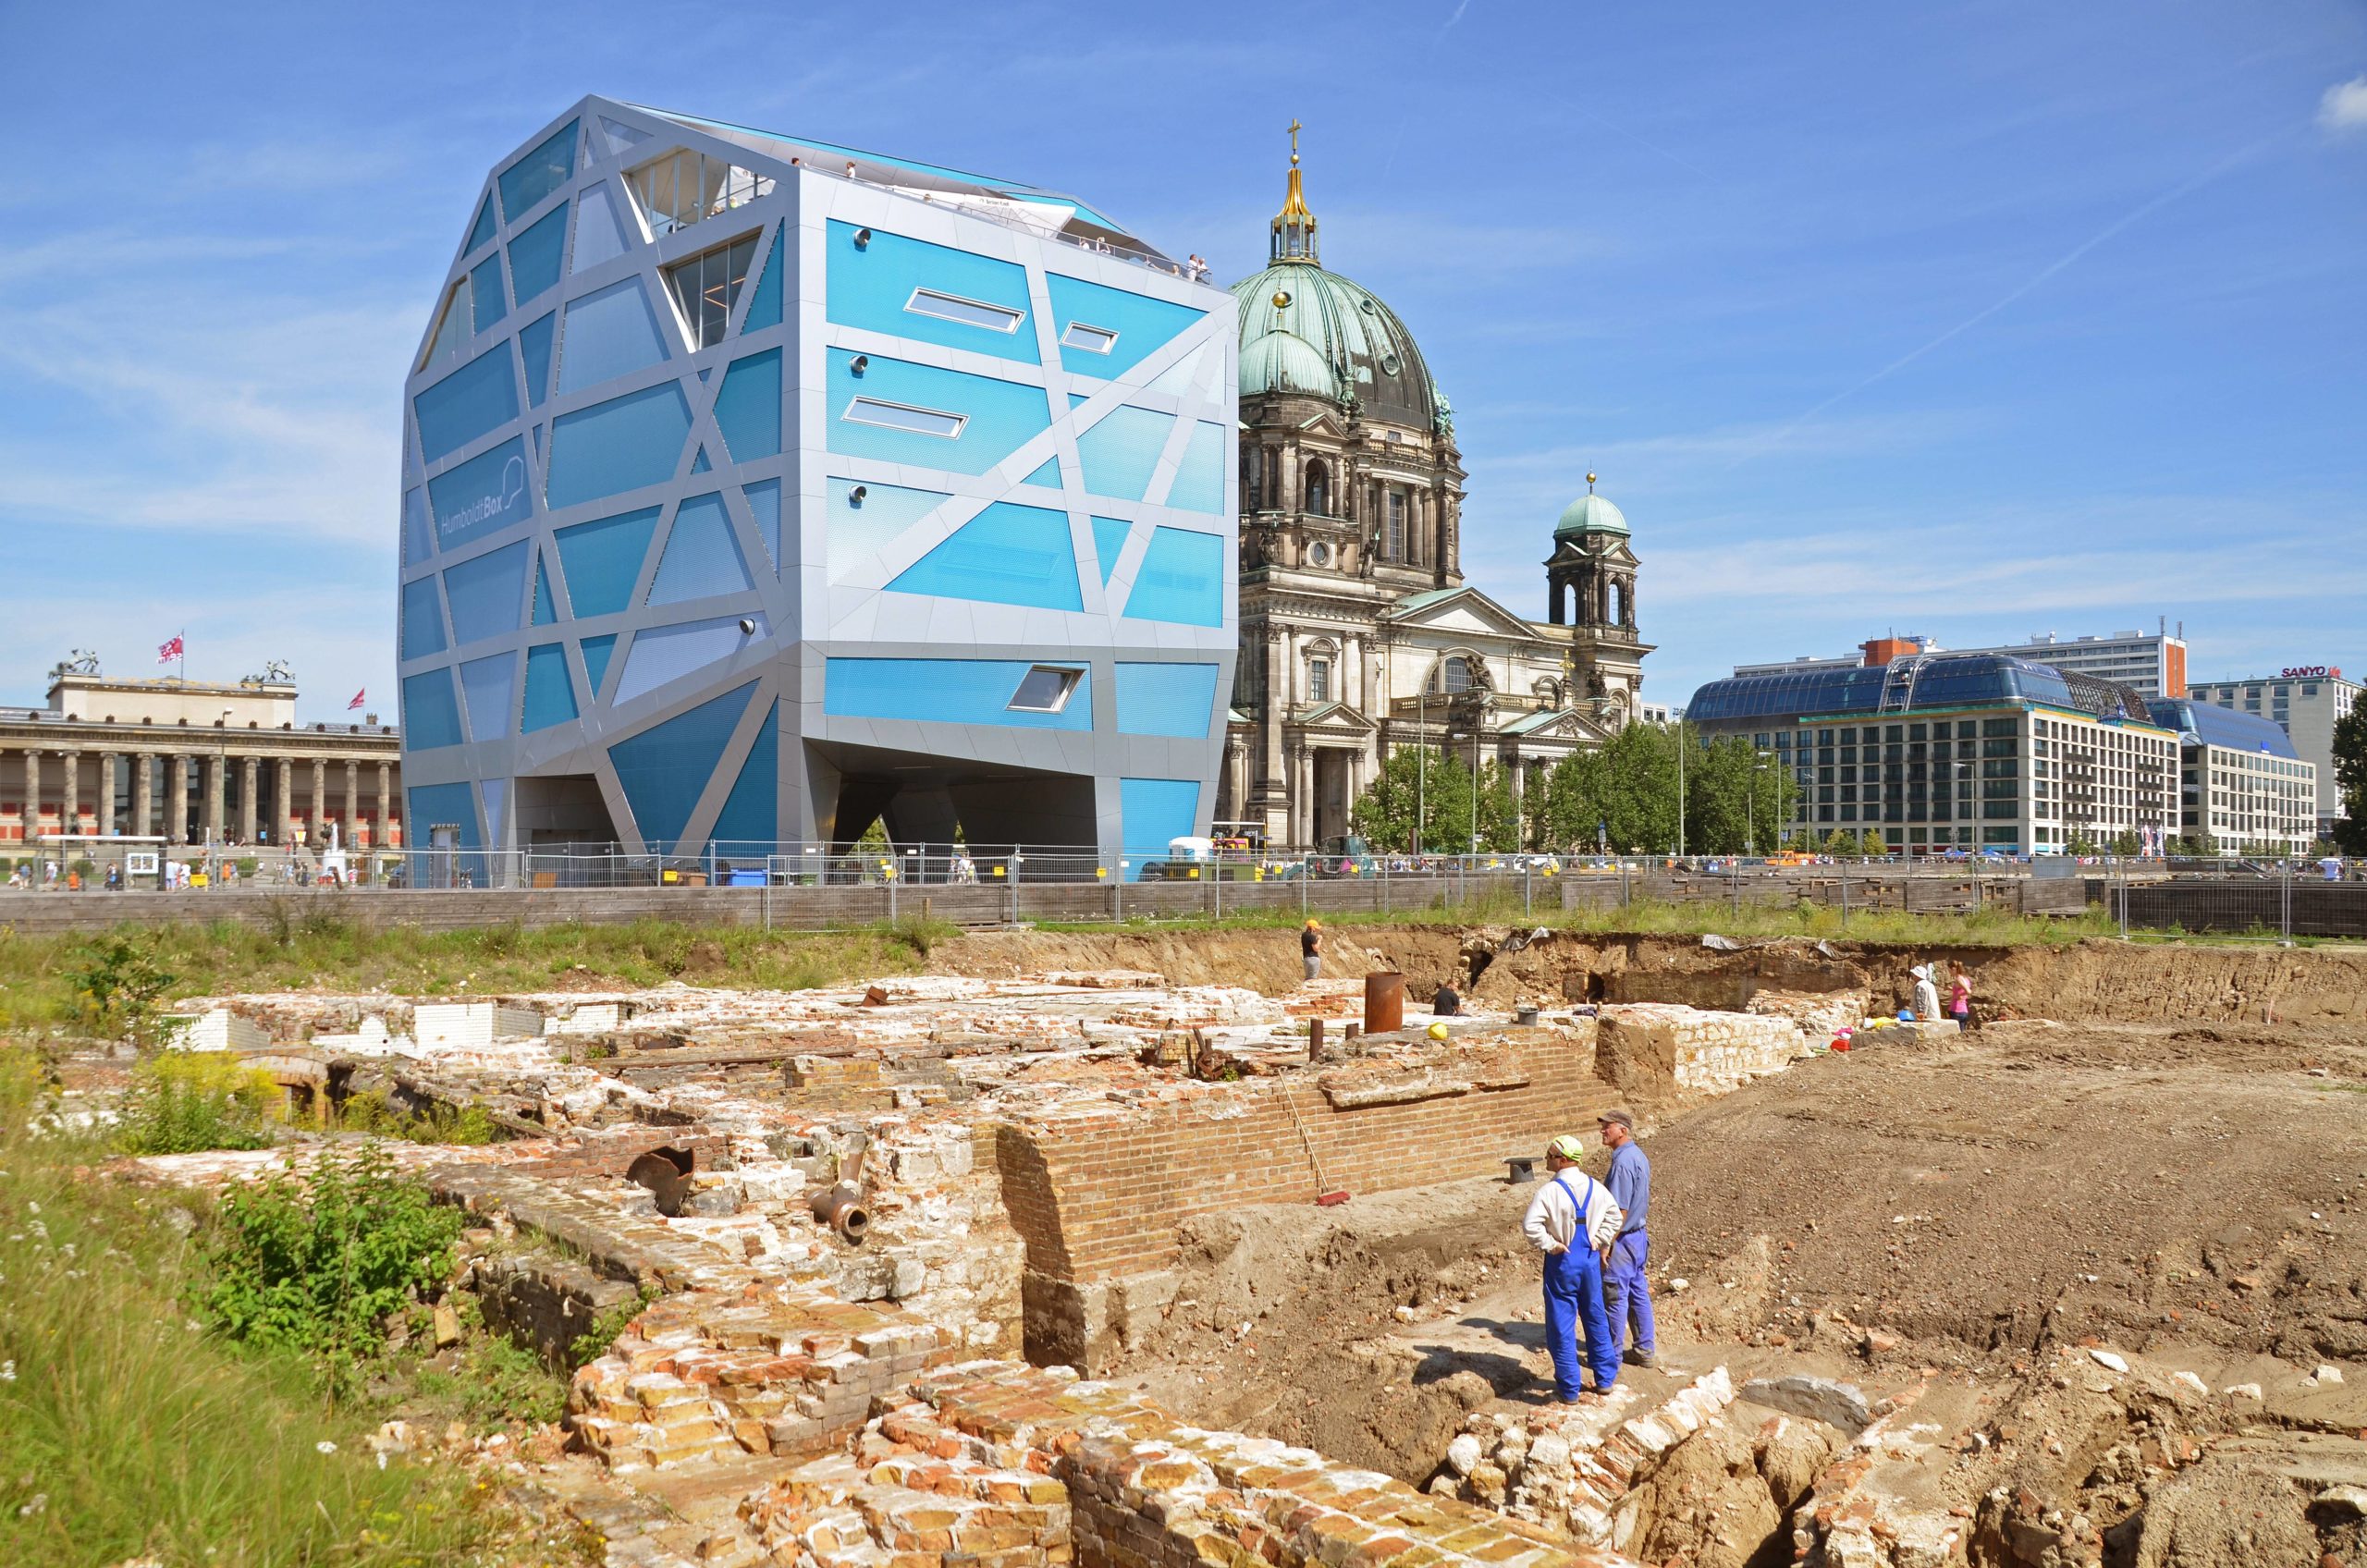 Humboldt-Box am Schlossplatz, im Vordergrund archäologische Ausgrabungsarbeiten. Foto: Imago/Raimund Müller